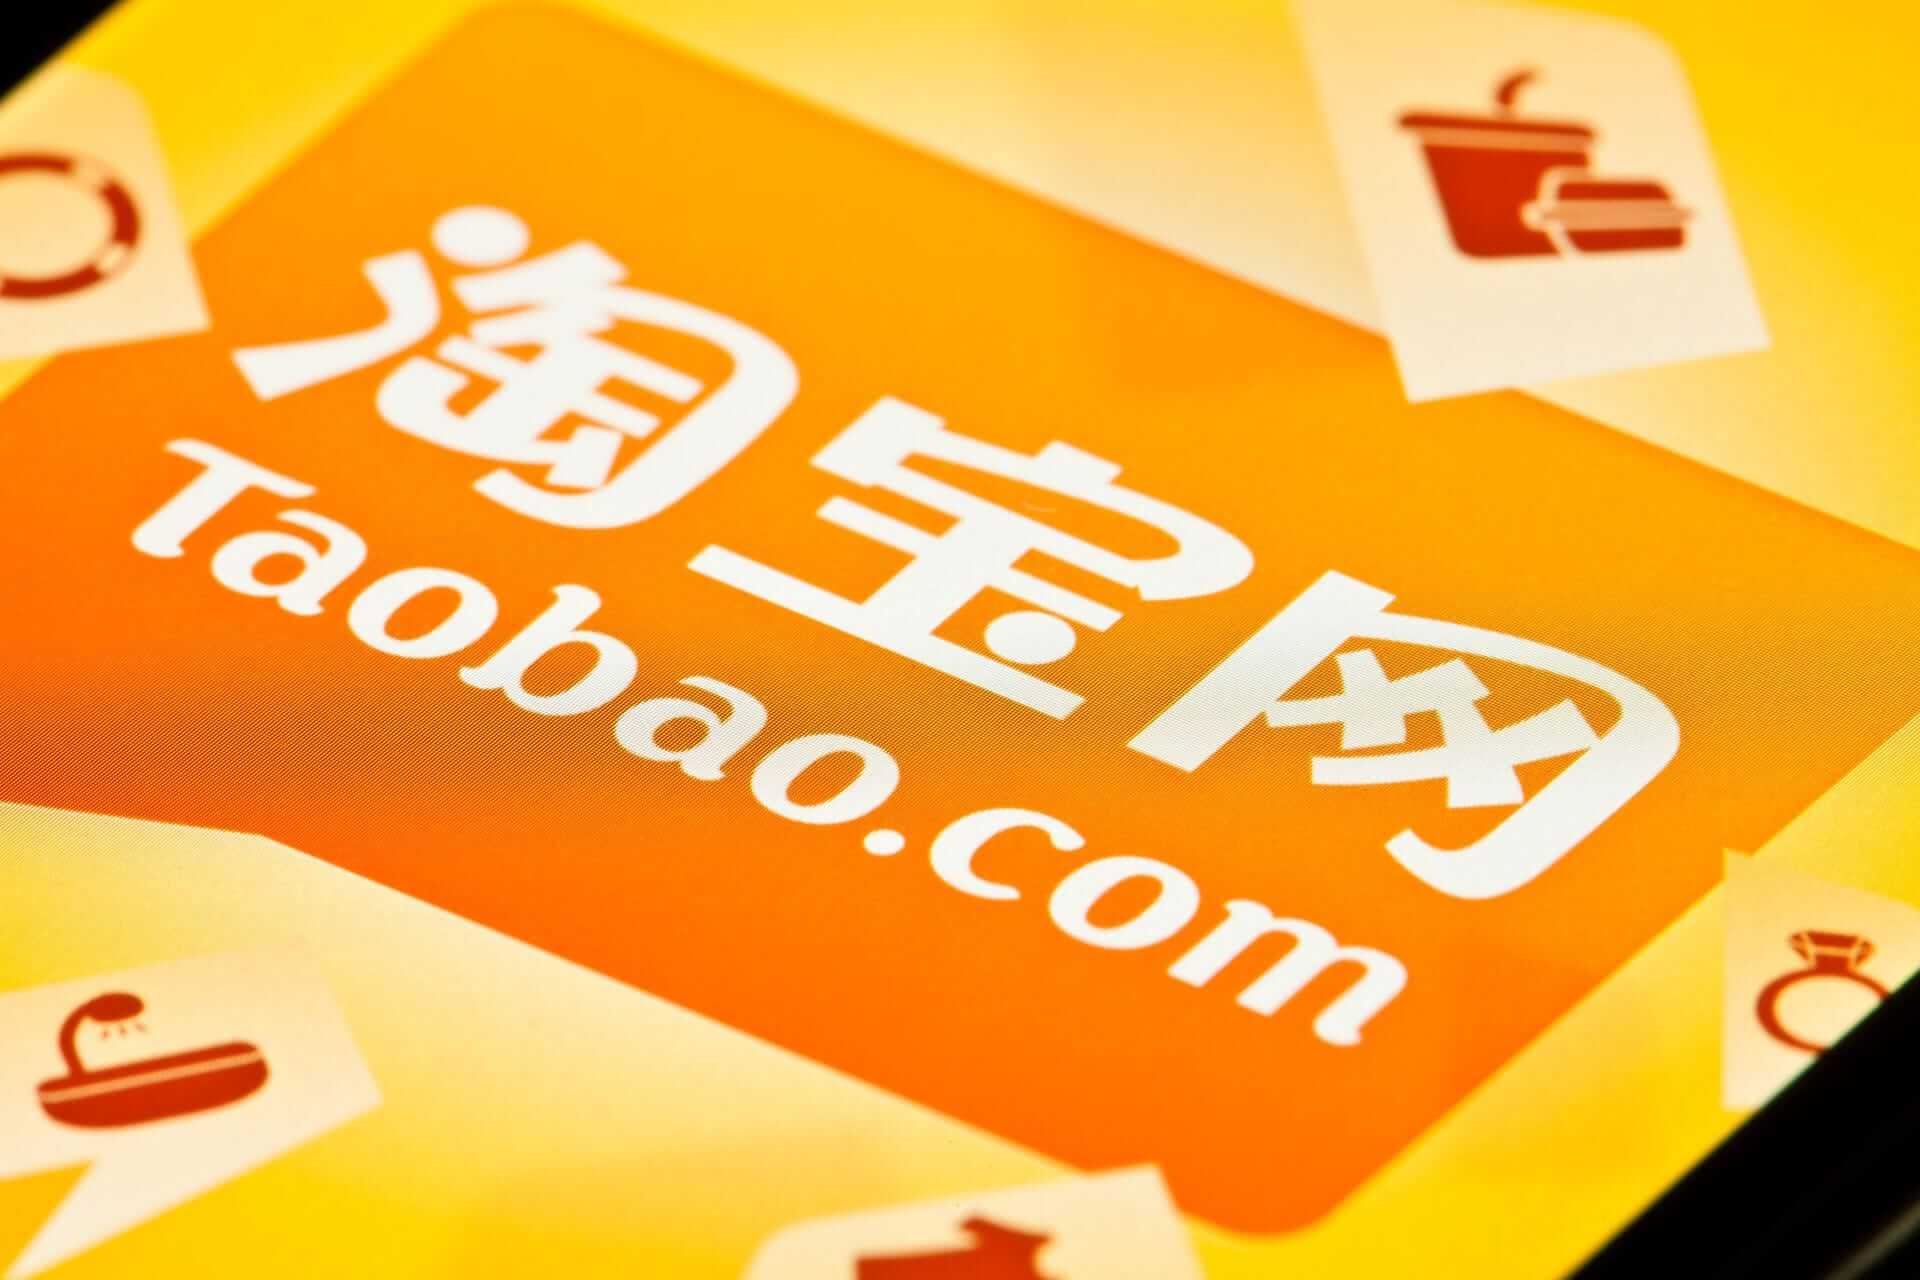 Крупнейший маркетплейс Taobao подарит покупателям платформы денежные призы общей стоимостью 1 млрд юаней в преддверии распродажи 11.11